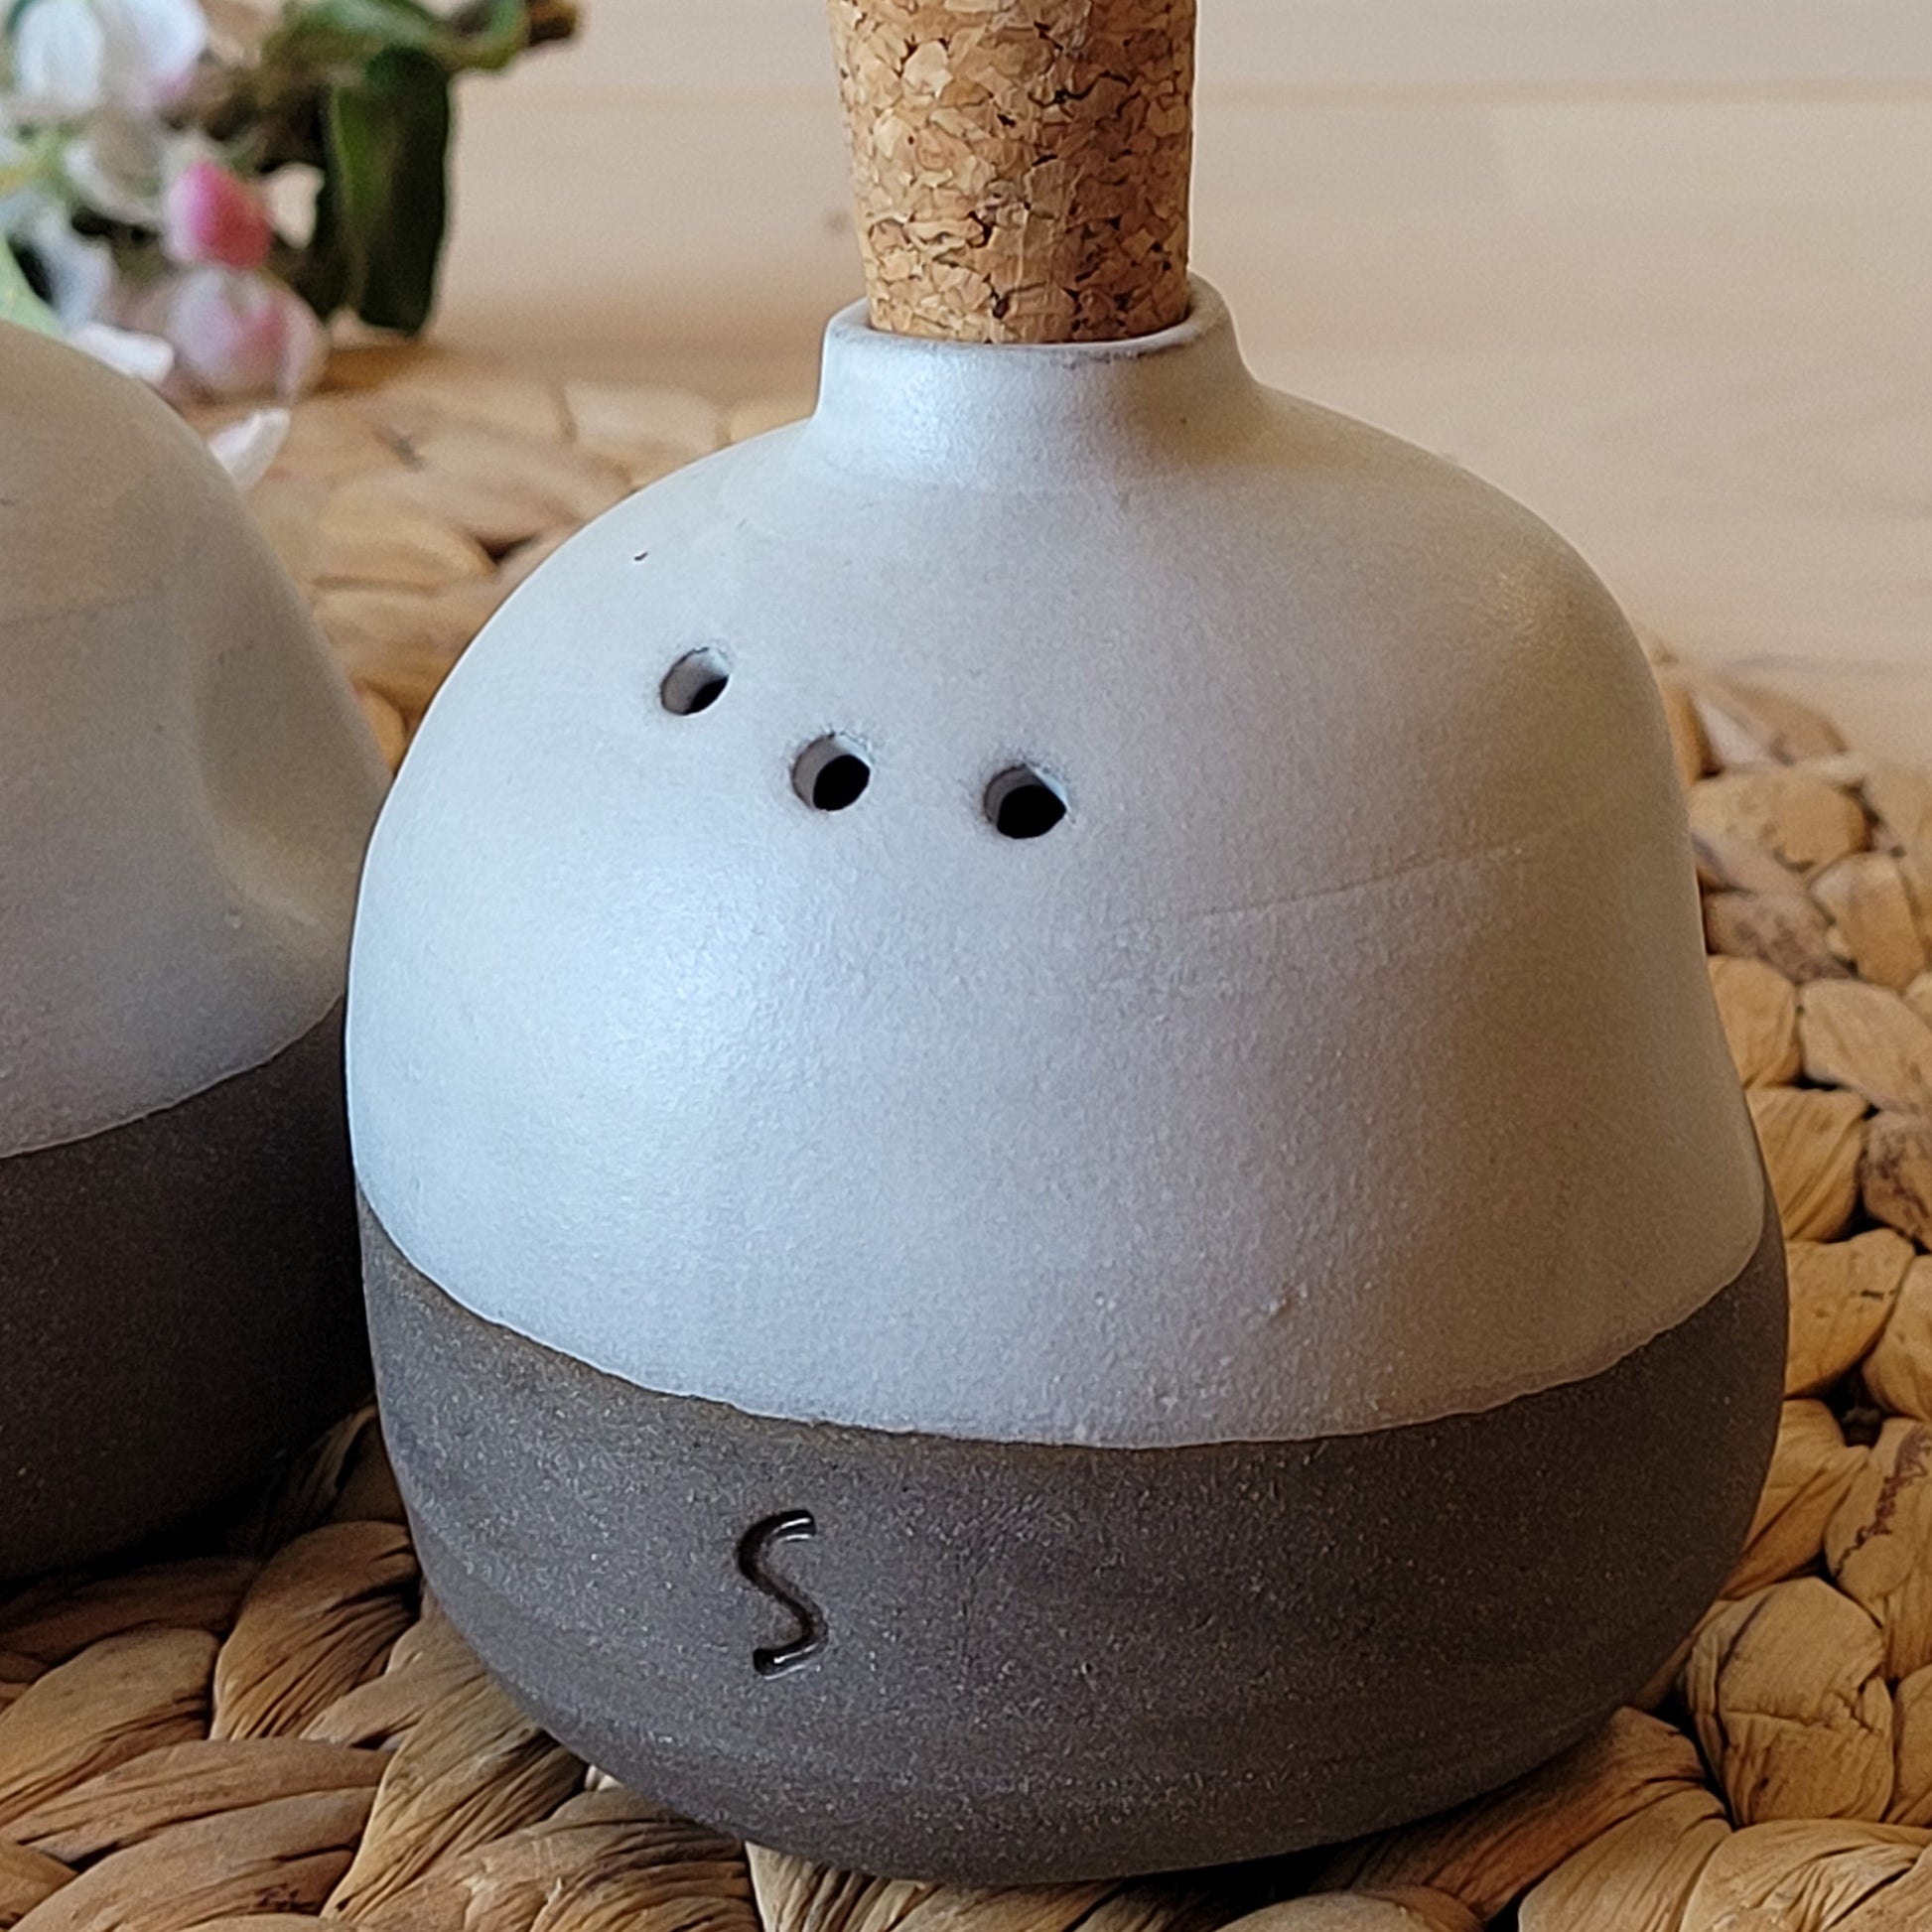  Handmade Pottery Salt & Pepper Shaker Set - Gray 